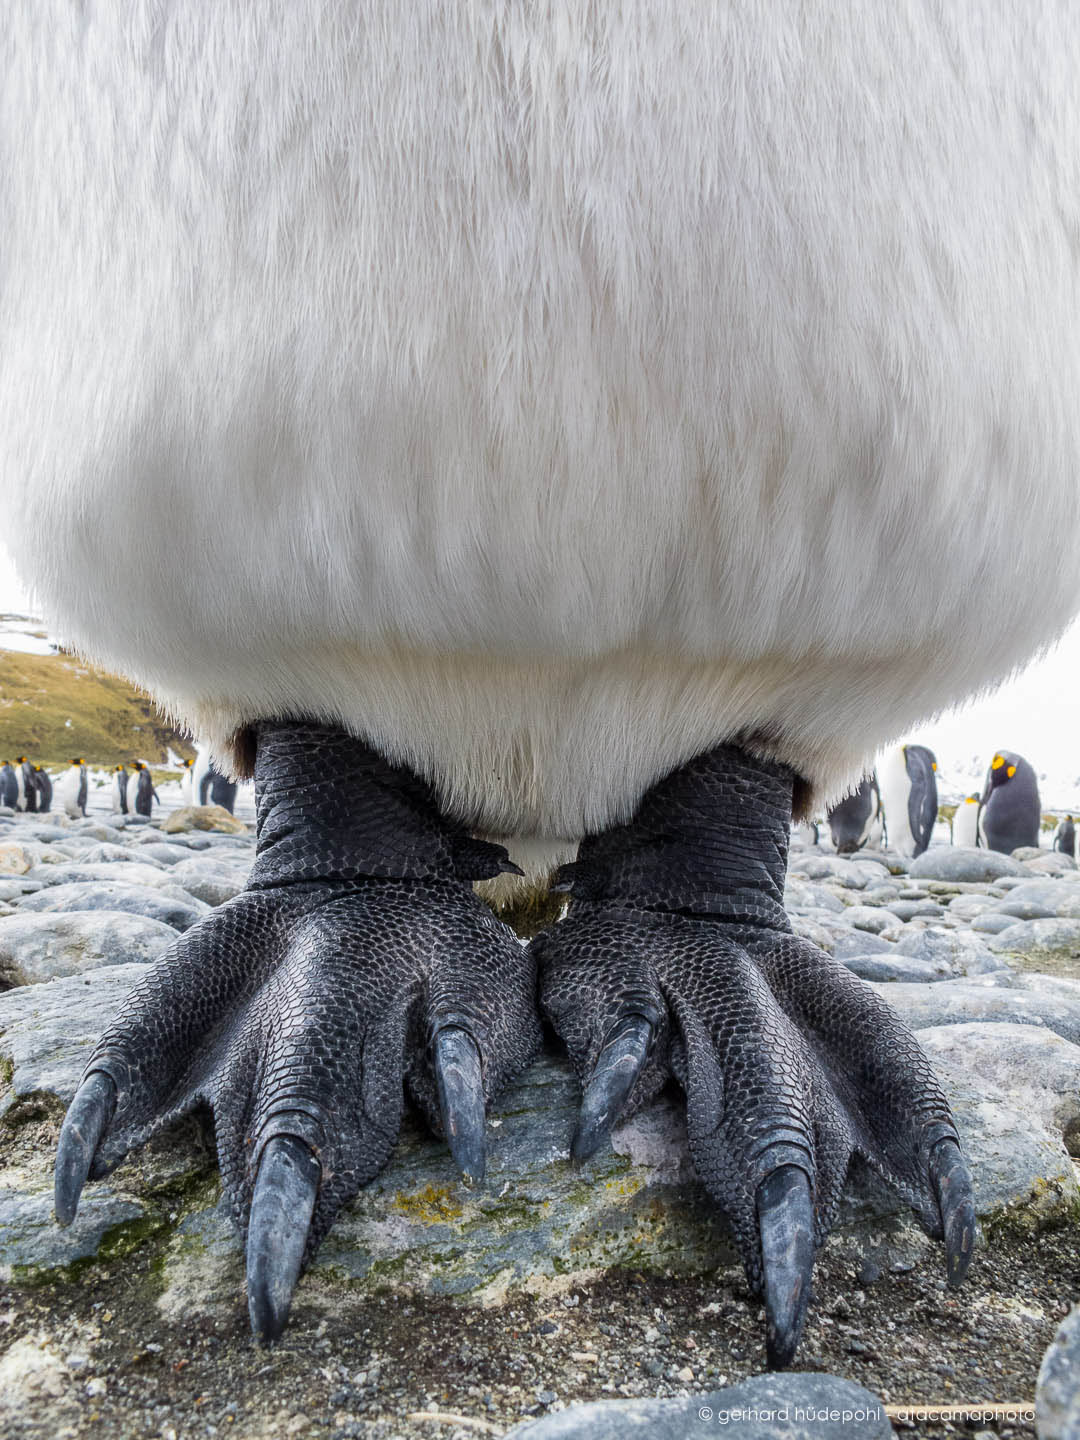 作为一只帝企鹅,它可以在南极零下几十度的环境下生存.